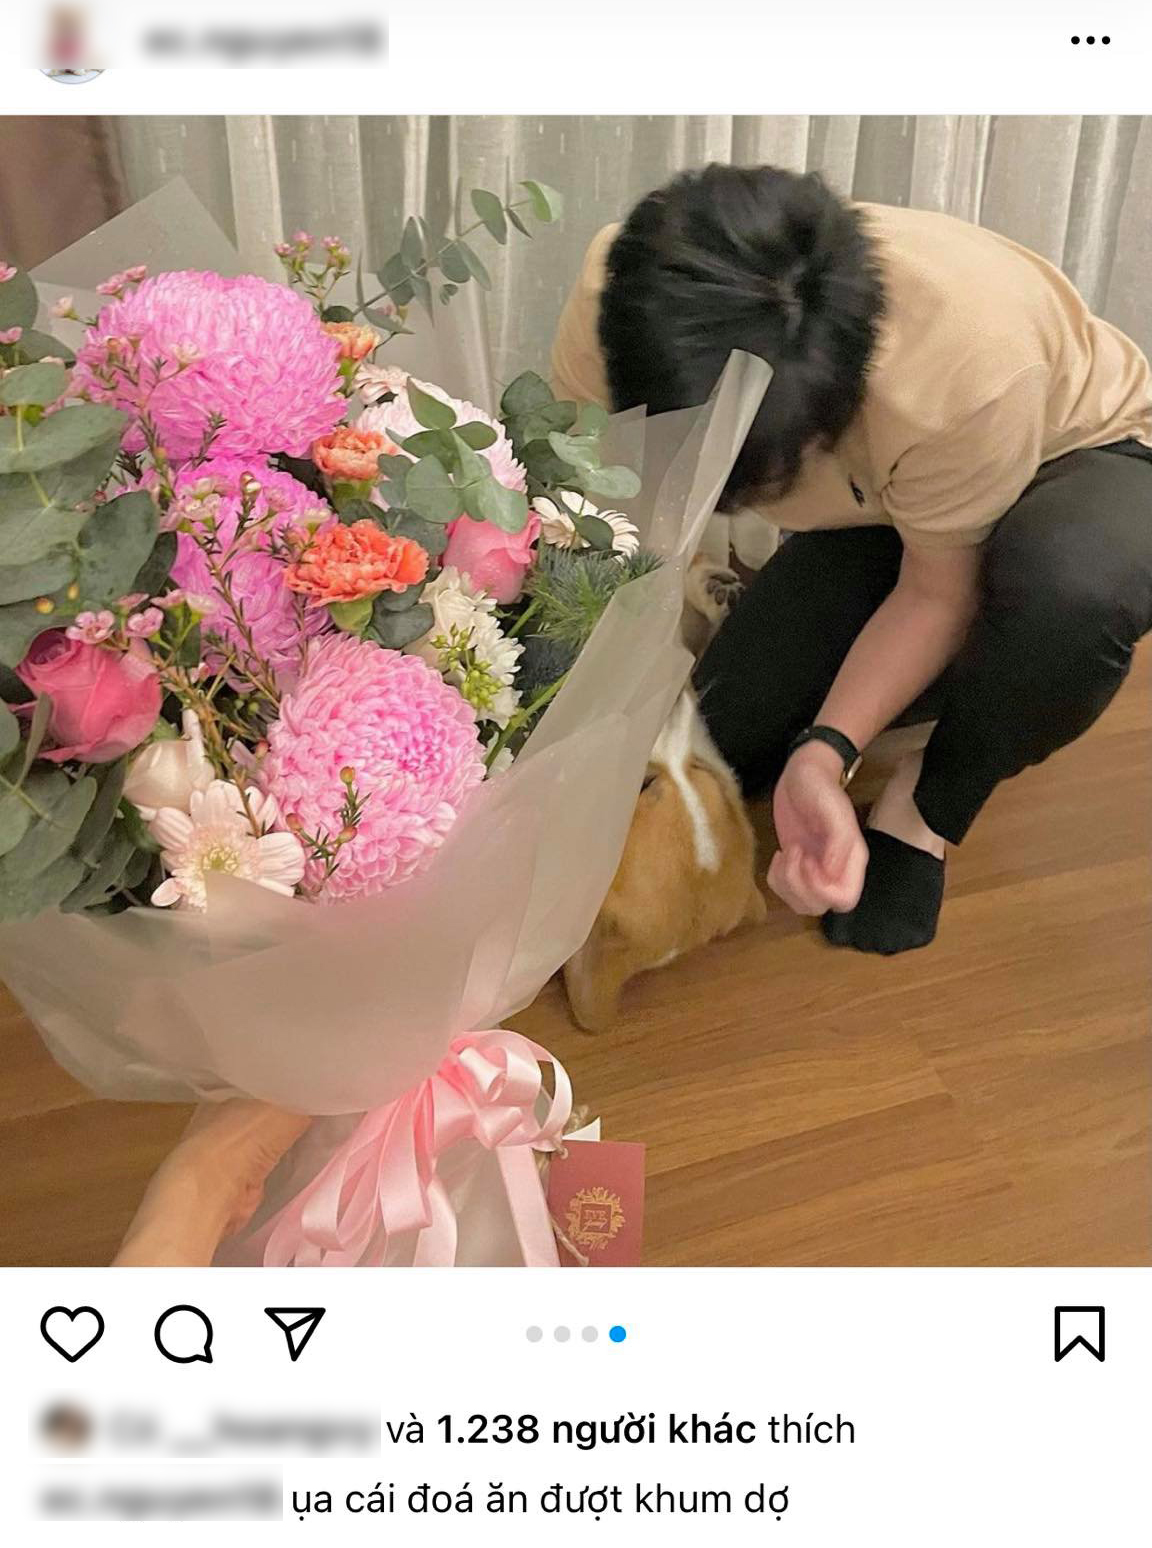 Trên tài khoản Instagram dành cho bé cún, Kiều Trinh Xíu và Phan Hoàng xuất hiện cùng nhau nhưng khéo léo giấu mặt